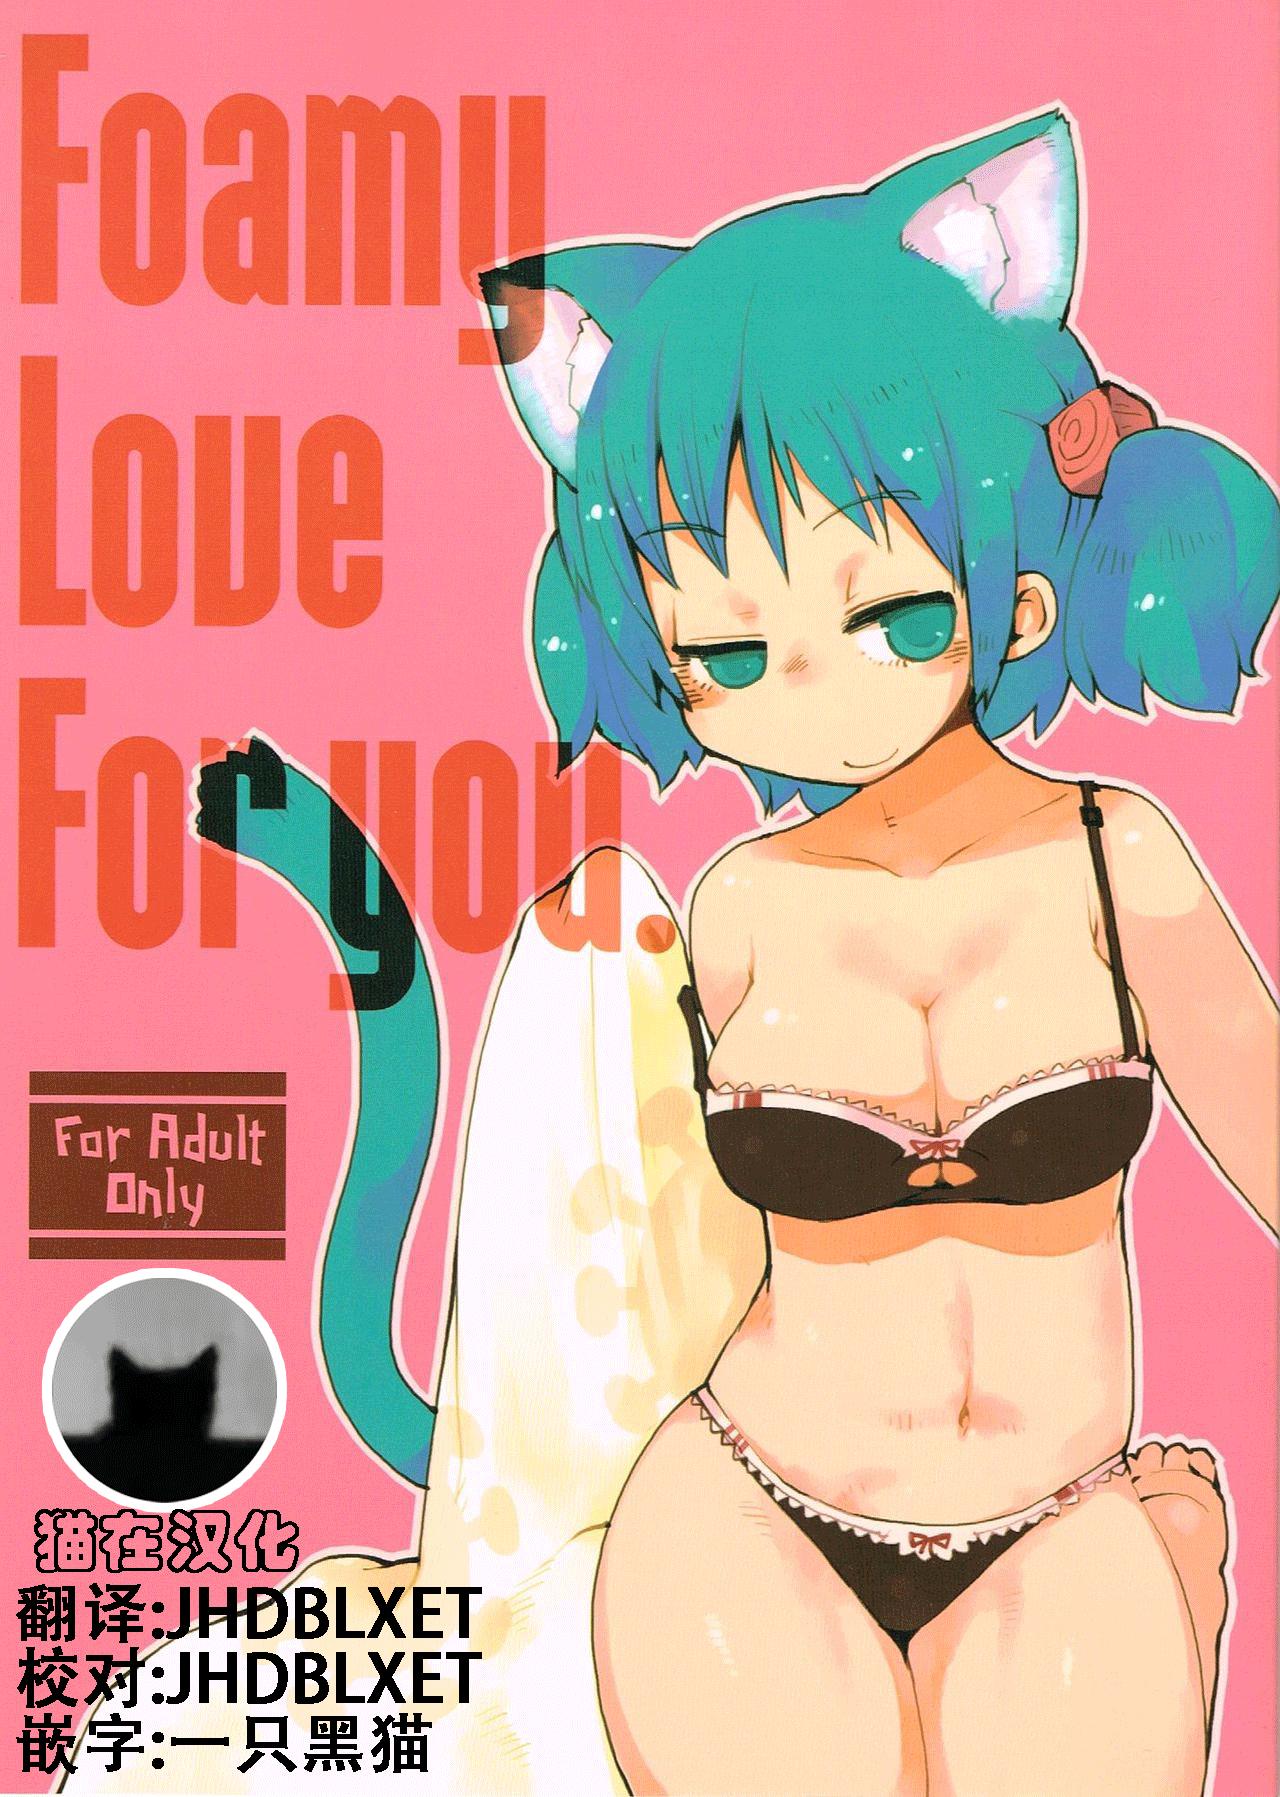 Deutsche Foamy Love For you. - Nichijou Fake Tits - Picture 1